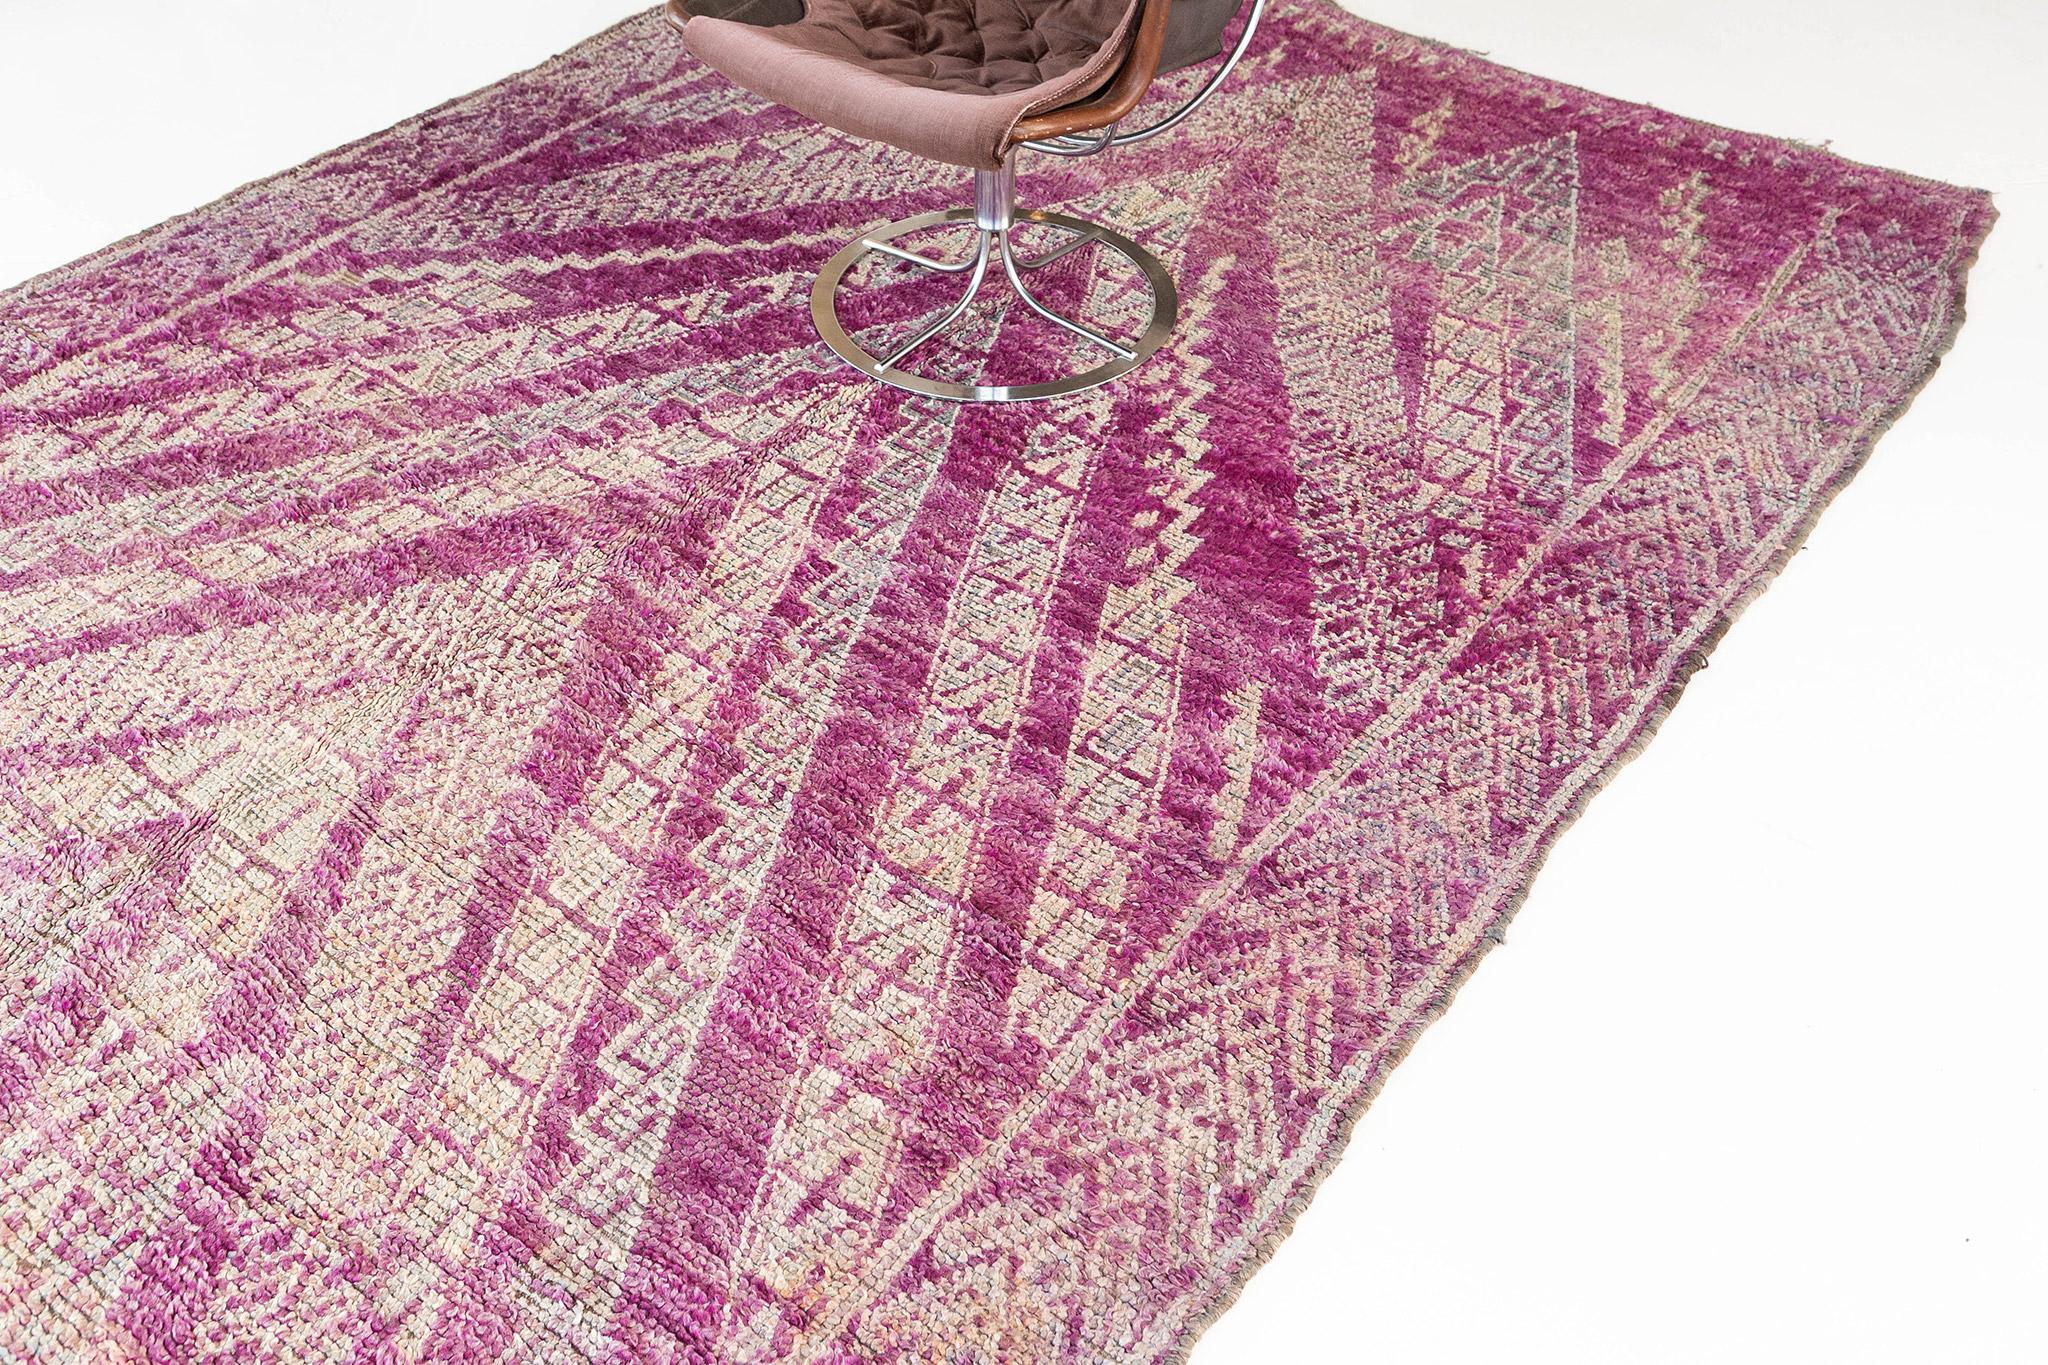 Caractéristique du Beni M'Guild, ce tapis présente un champ magenta vif avec des chevrons traditionnels en saillie de couleur anthracite et taupe, soulignés d'ivoire. Les bordures latérales reprennent la forme du V à une échelle plus petite et plus